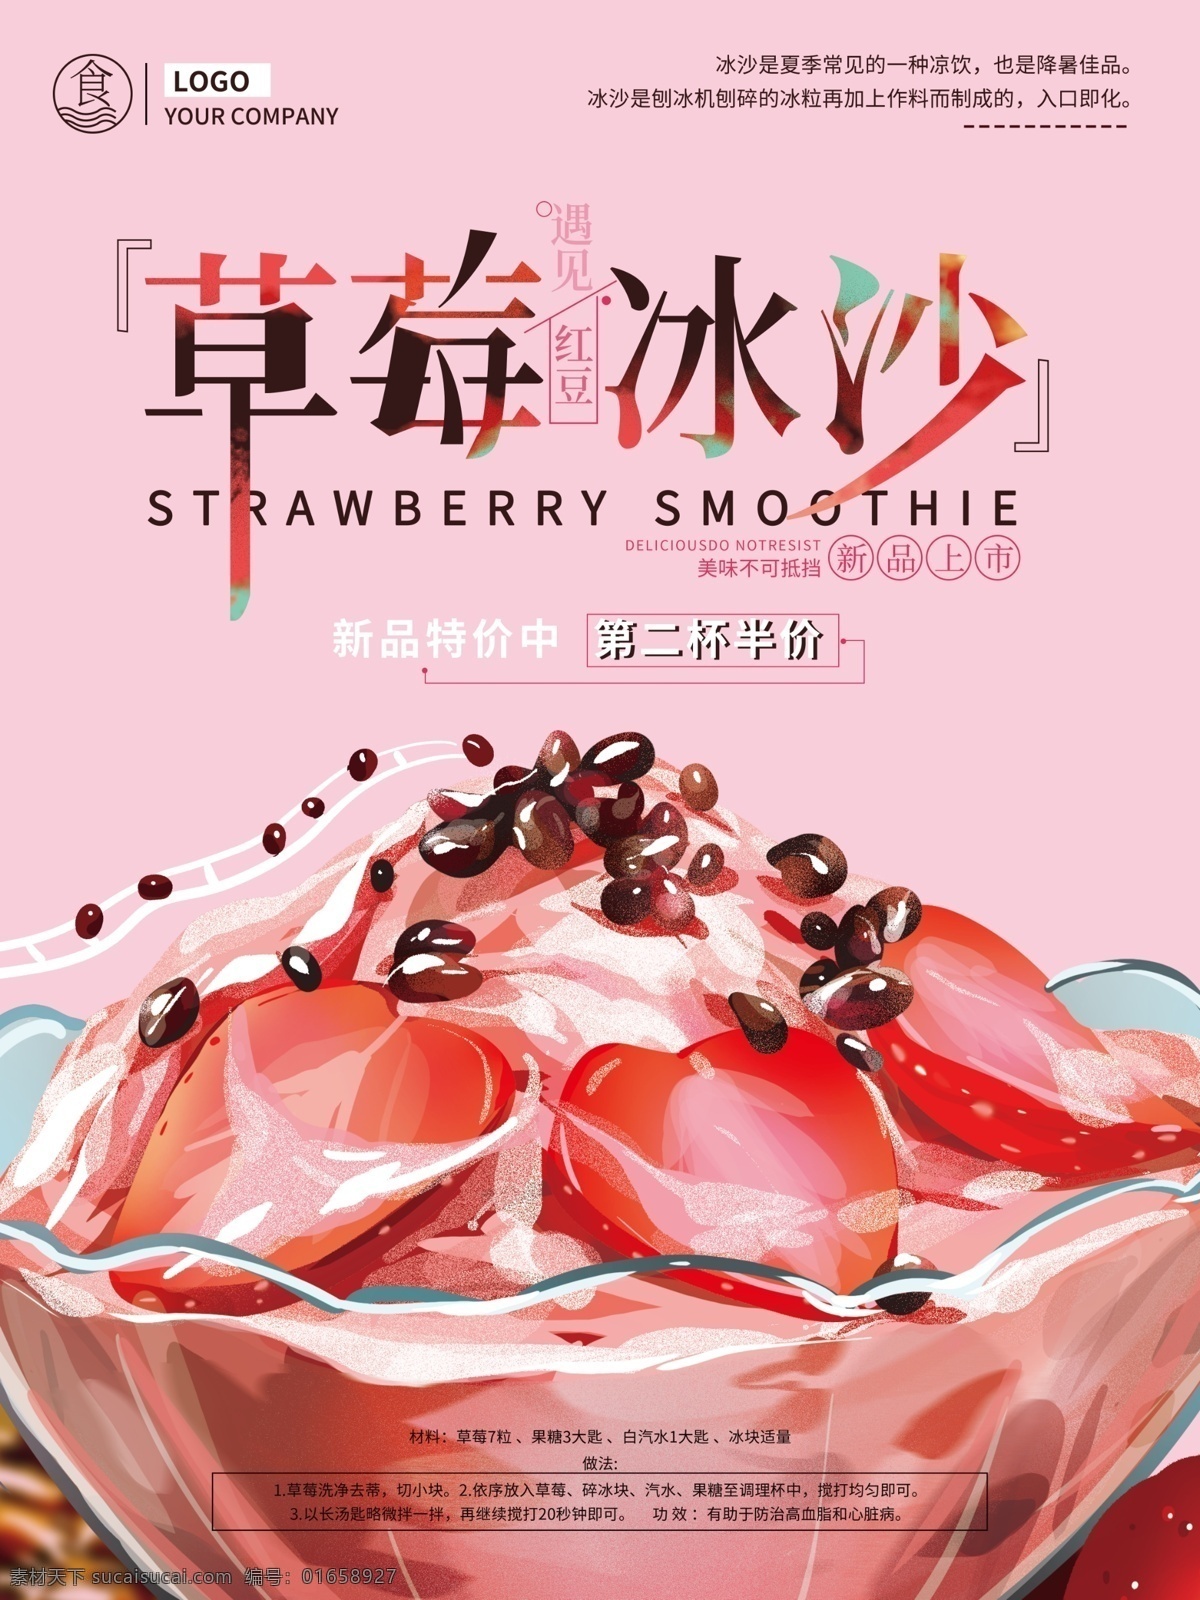 原创 手绘 草莓 冰 沙 促销 海报 粉色 插画 简约 温馨 甜蜜 商业 美食 美食海报 冰沙